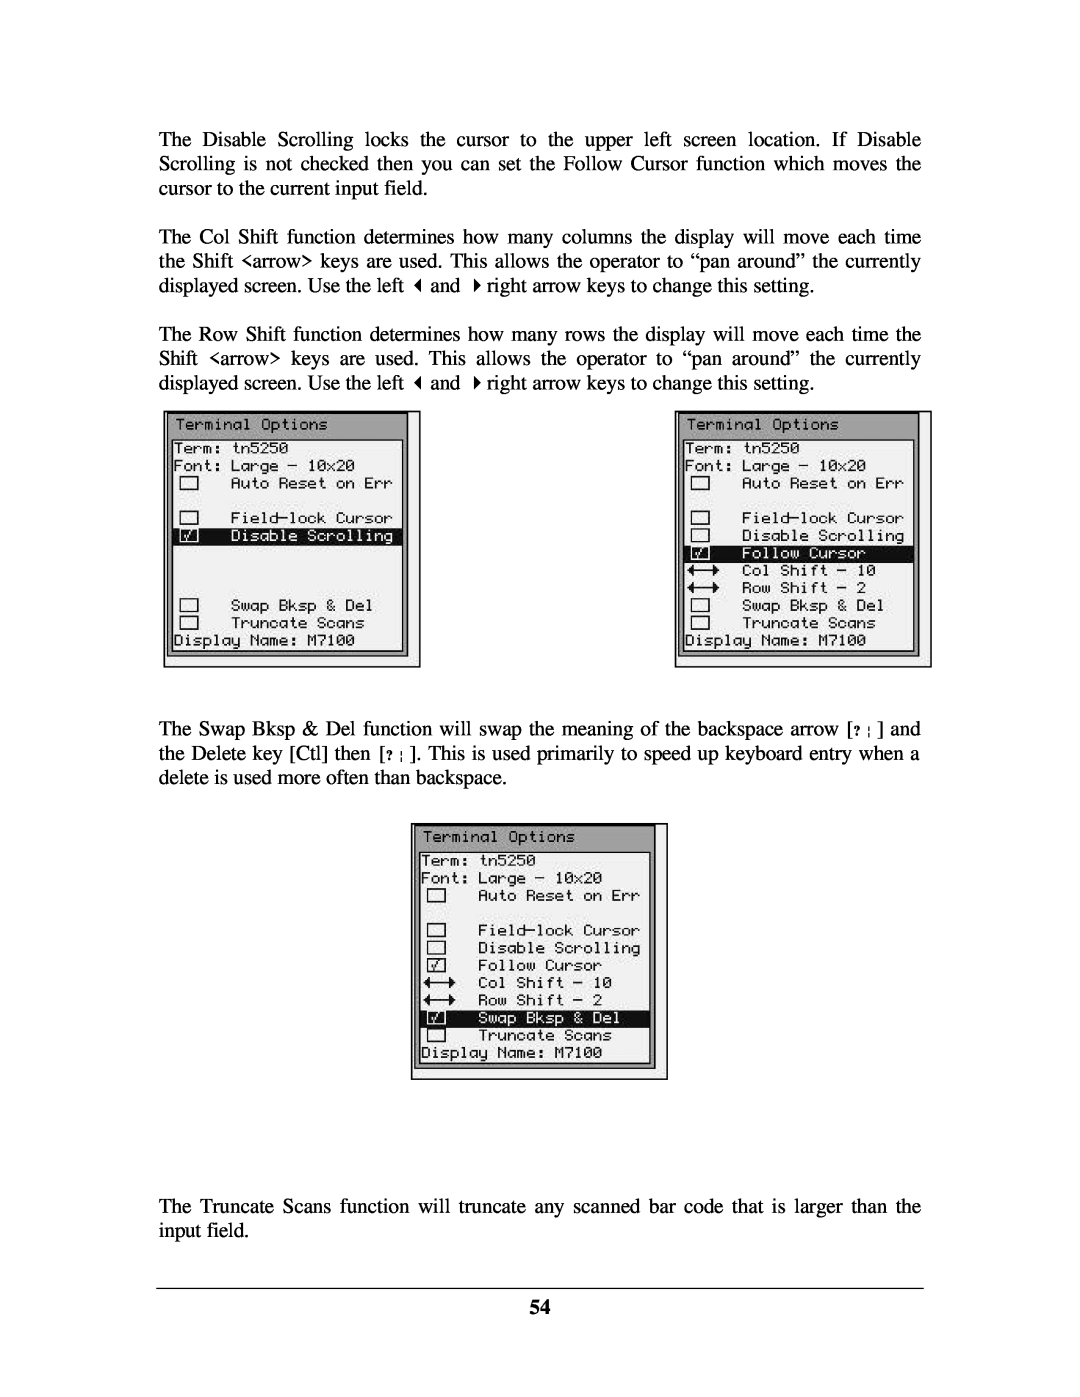 IBM M71V2 manual 